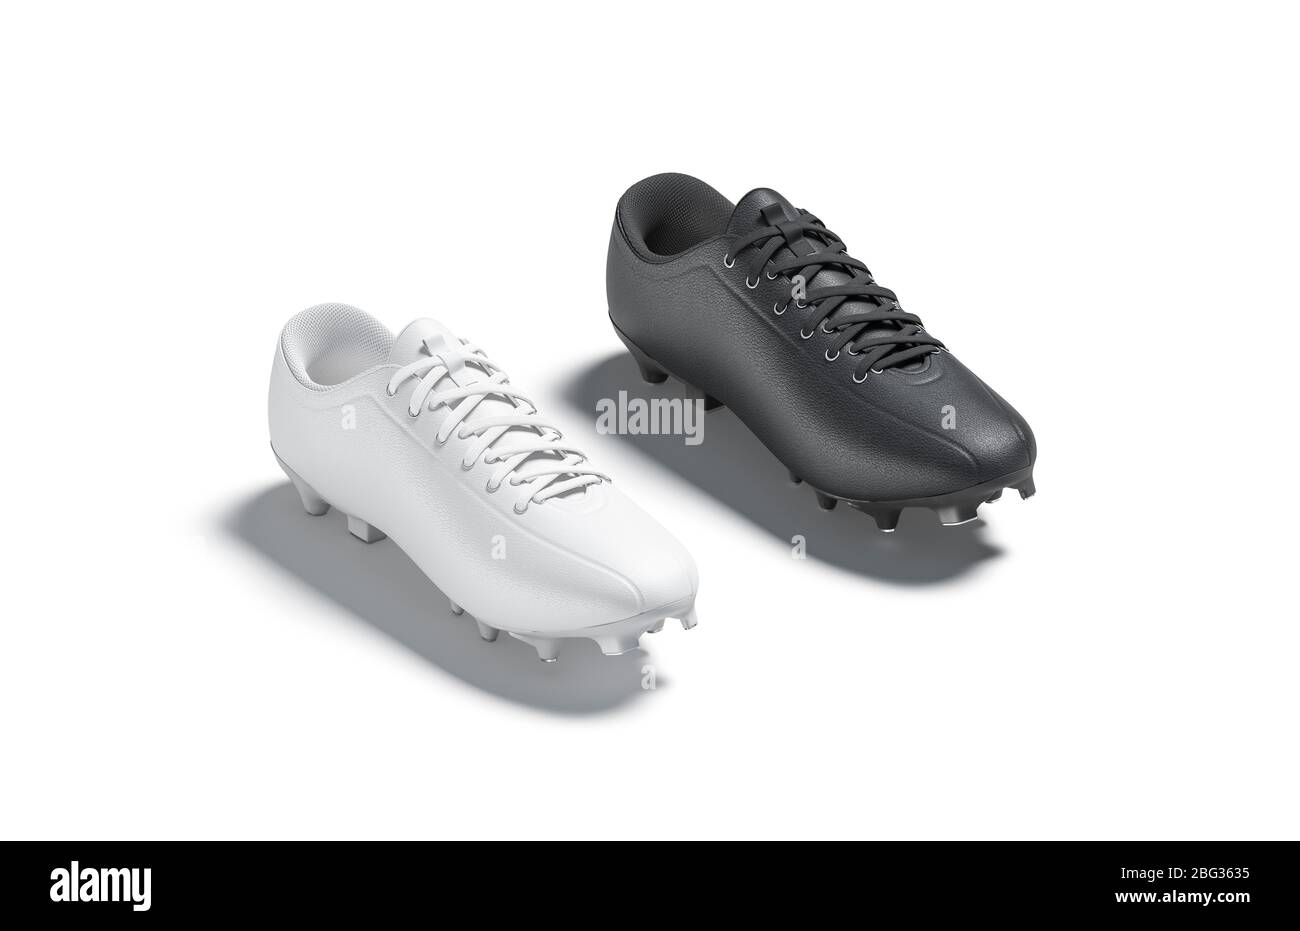 Chaussure de football noir et blanc vierge avec maquette de crampons en  caoutchouc Photo Stock - Alamy